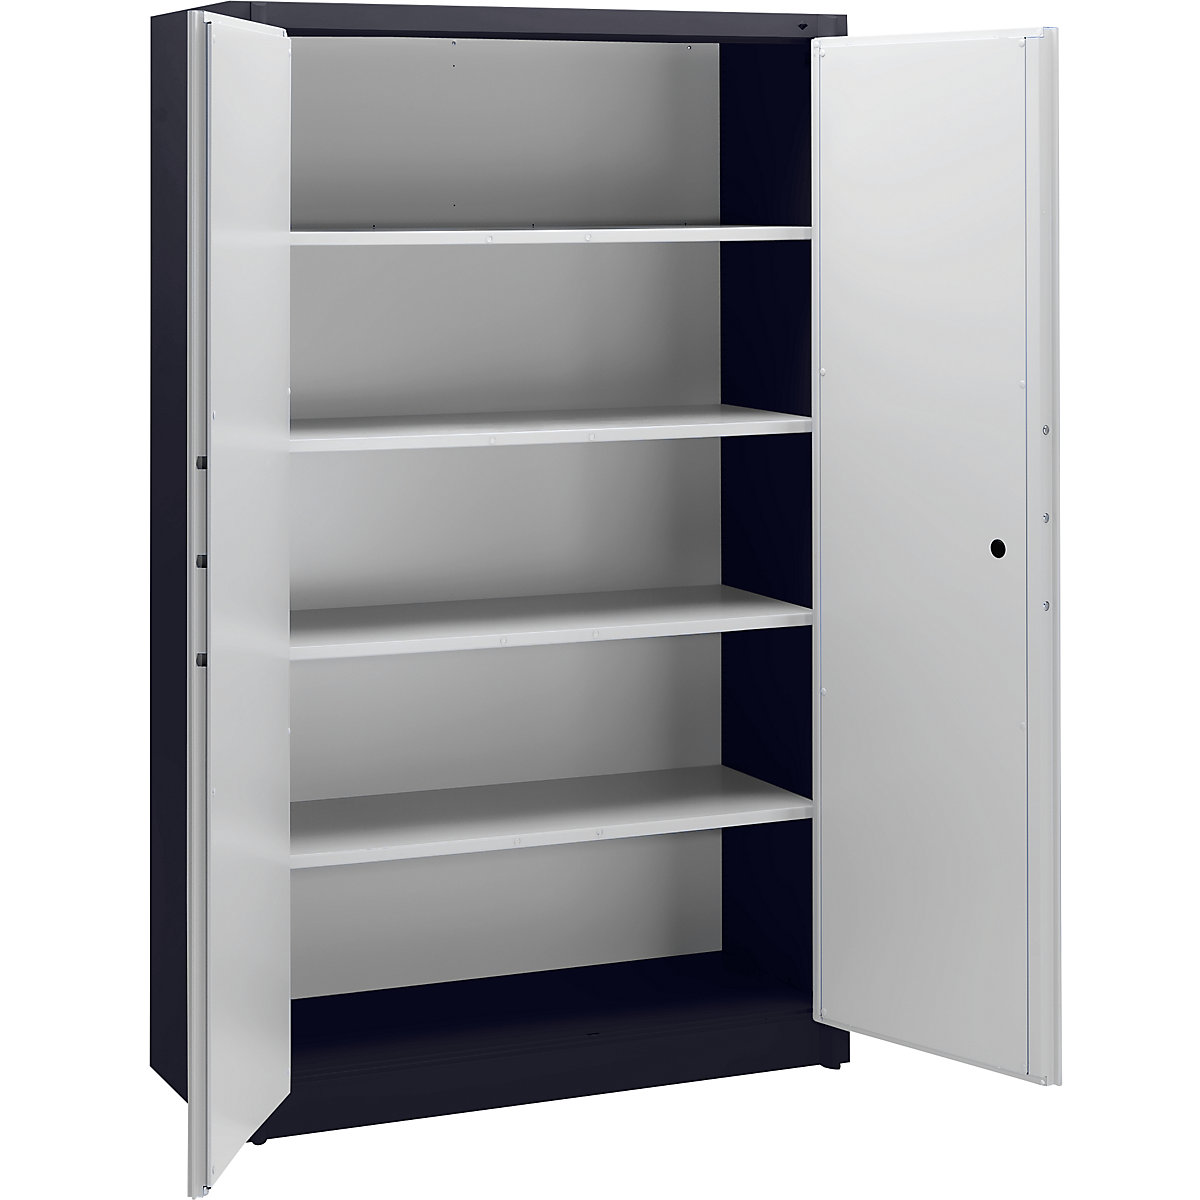 Steel cupboard, fireproof – C+P, DIN 4102 compliant, HxWxD 1950 x 1200 x 500 mm, black grey/light grey-13